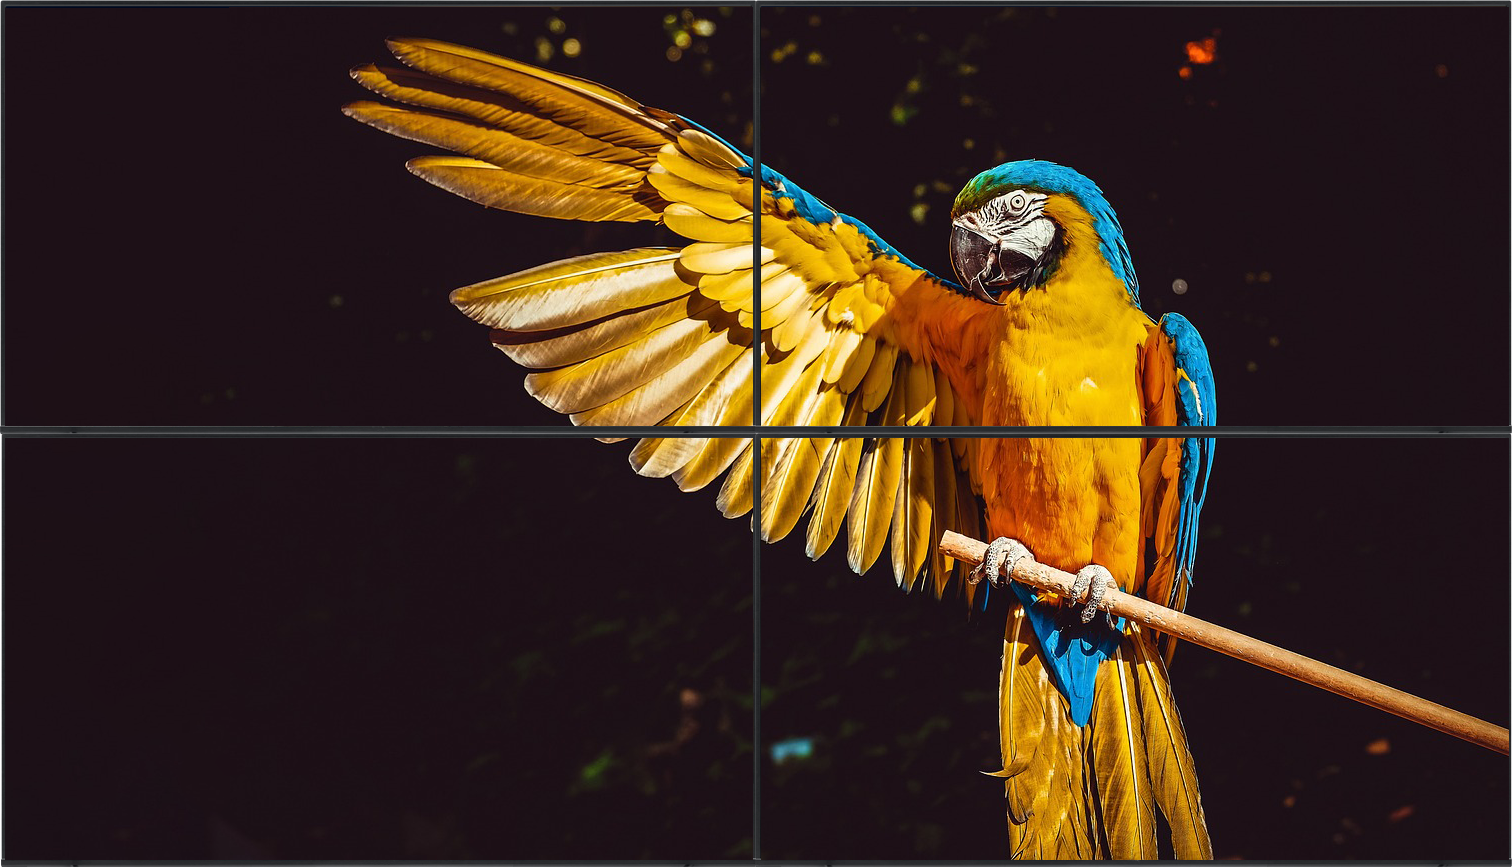 BrightSign videowall che visualizza l'immagine di alta qualità di un pappagallo